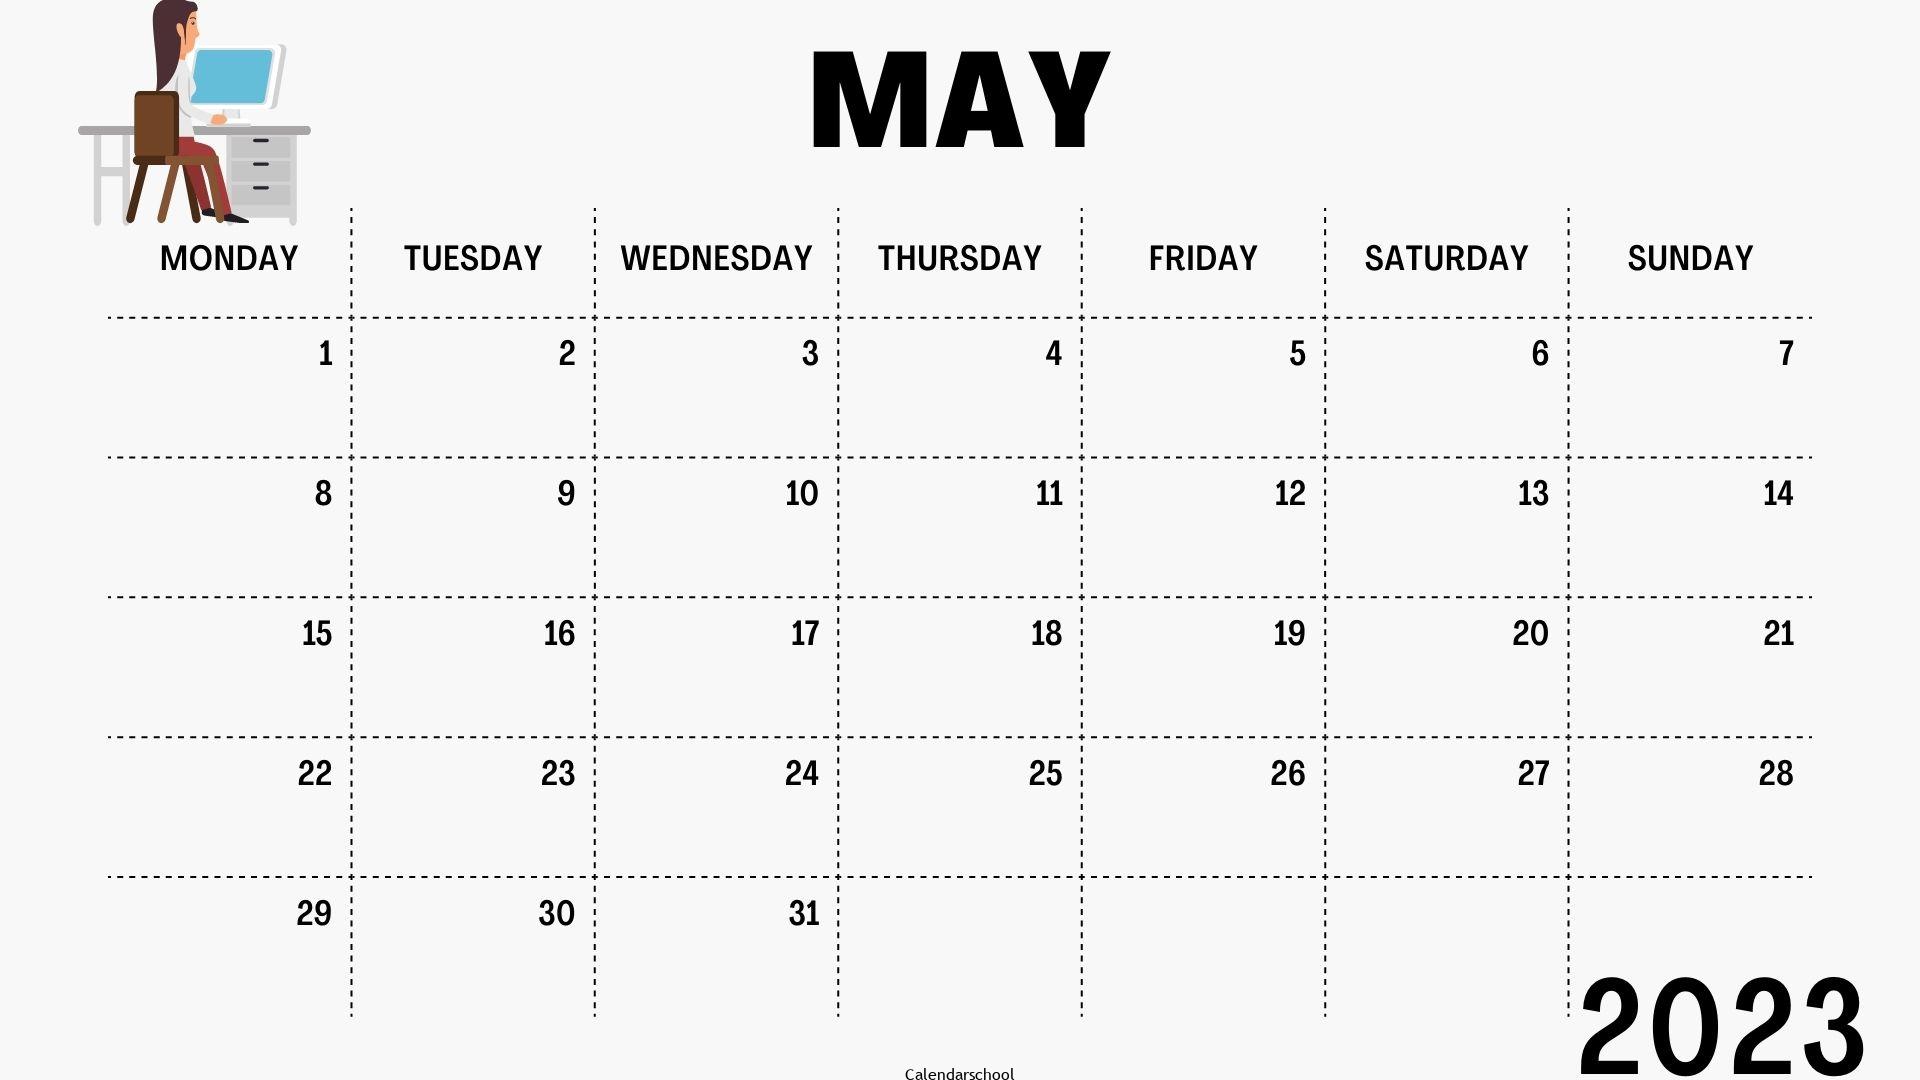 May 2023 Printable Calendar By Week